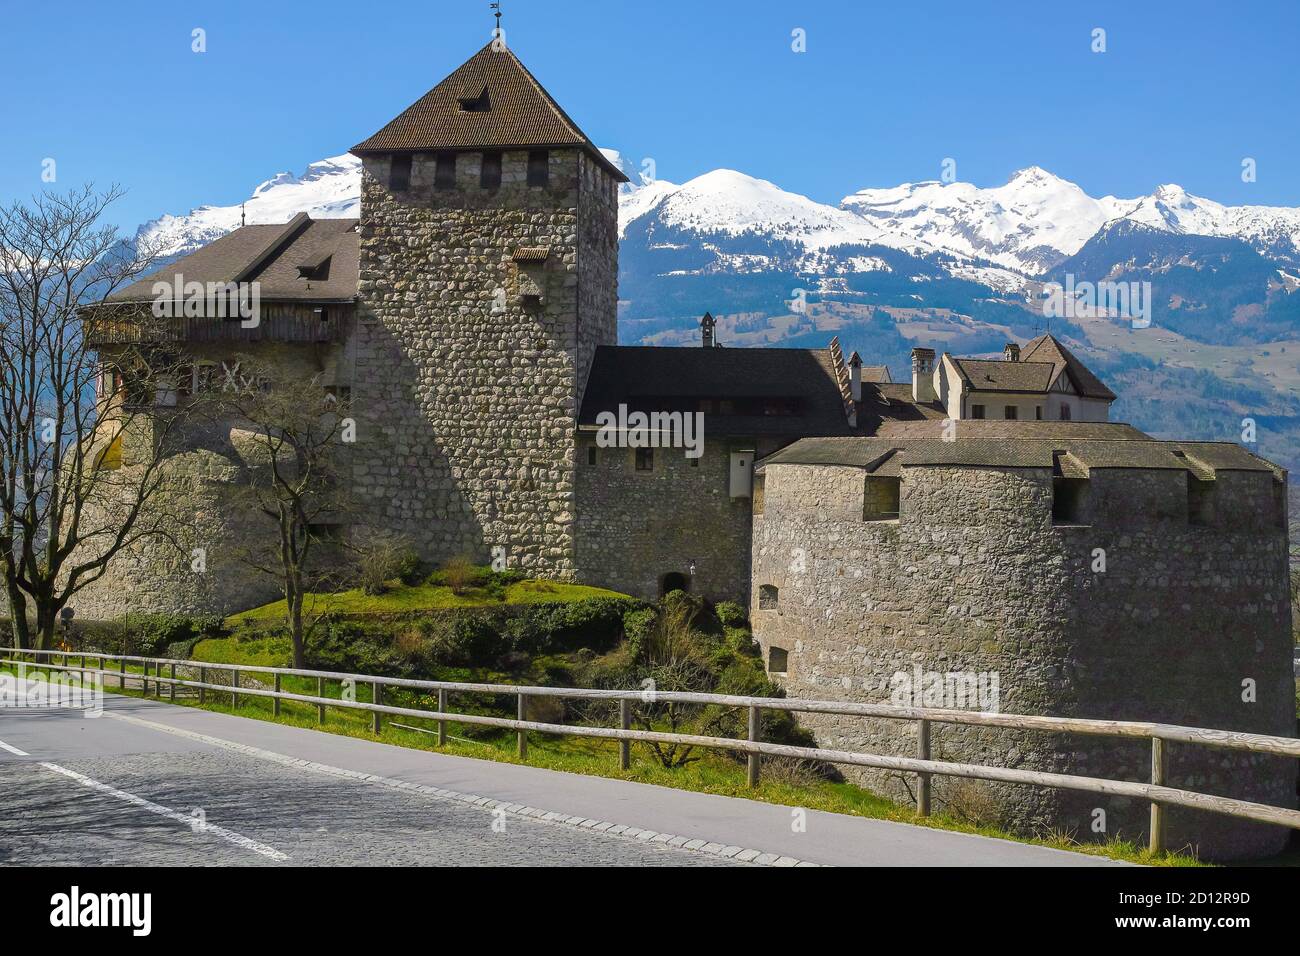 Il Castello di Vaduz è la residenza ufficiale del Principe del Liechtenstein. Il Palazzo prende il nome dalla città di Vaduz, la capitale del Liechtenstein. Foto Stock